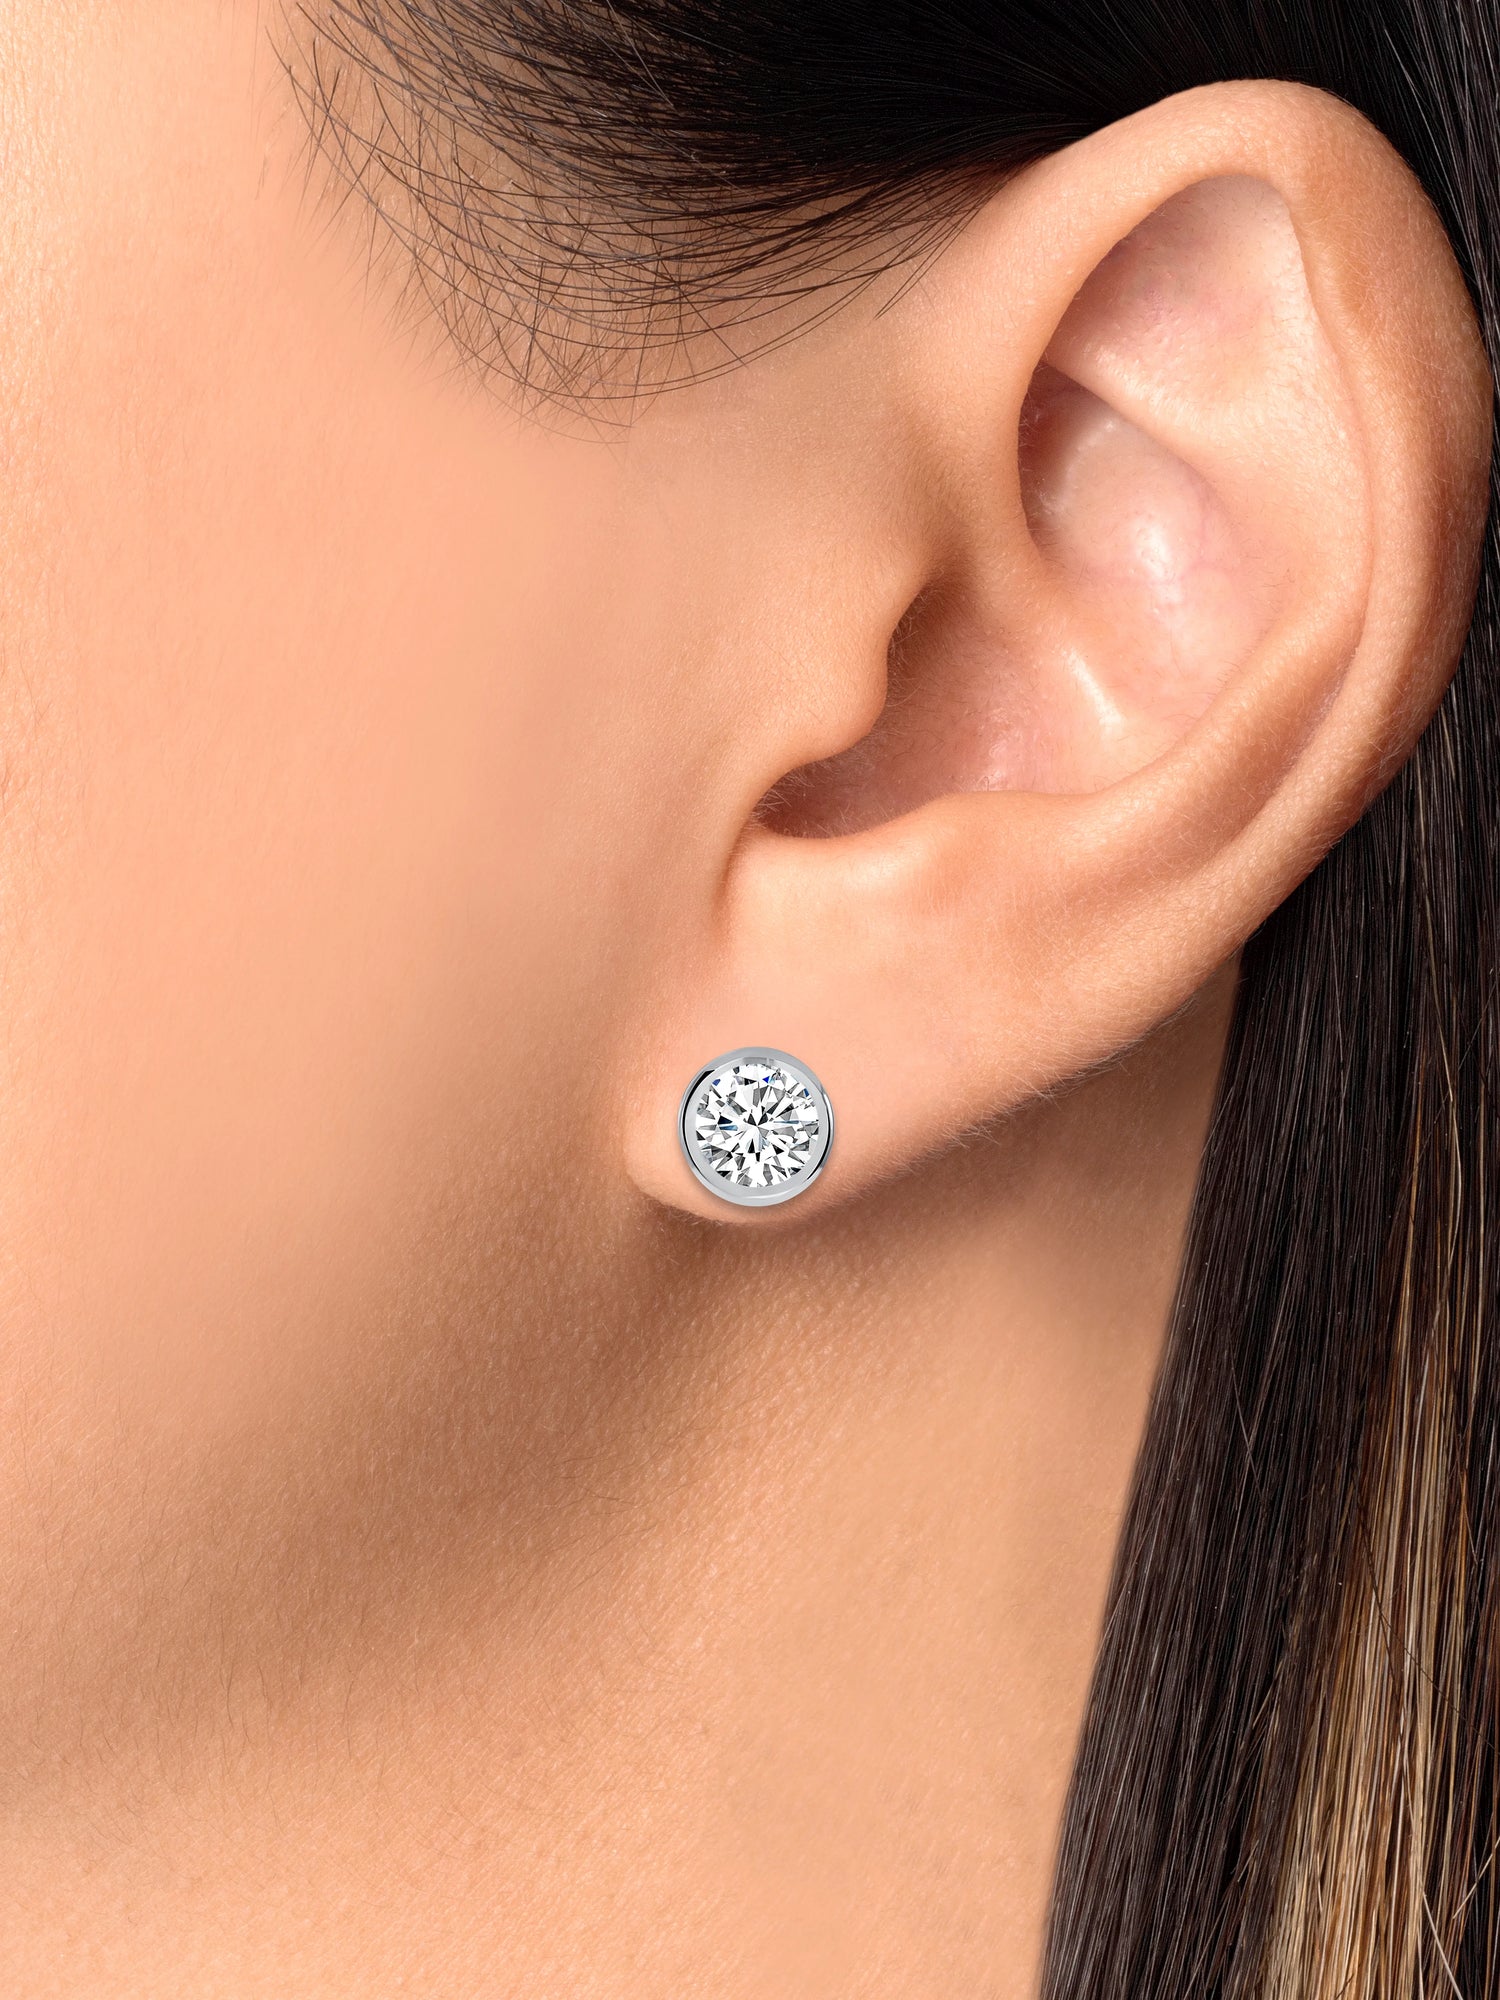 925 Sterling Silver Round Cut Bezel Set CZ Pendant &amp; Stud Earrings Jewelry Set